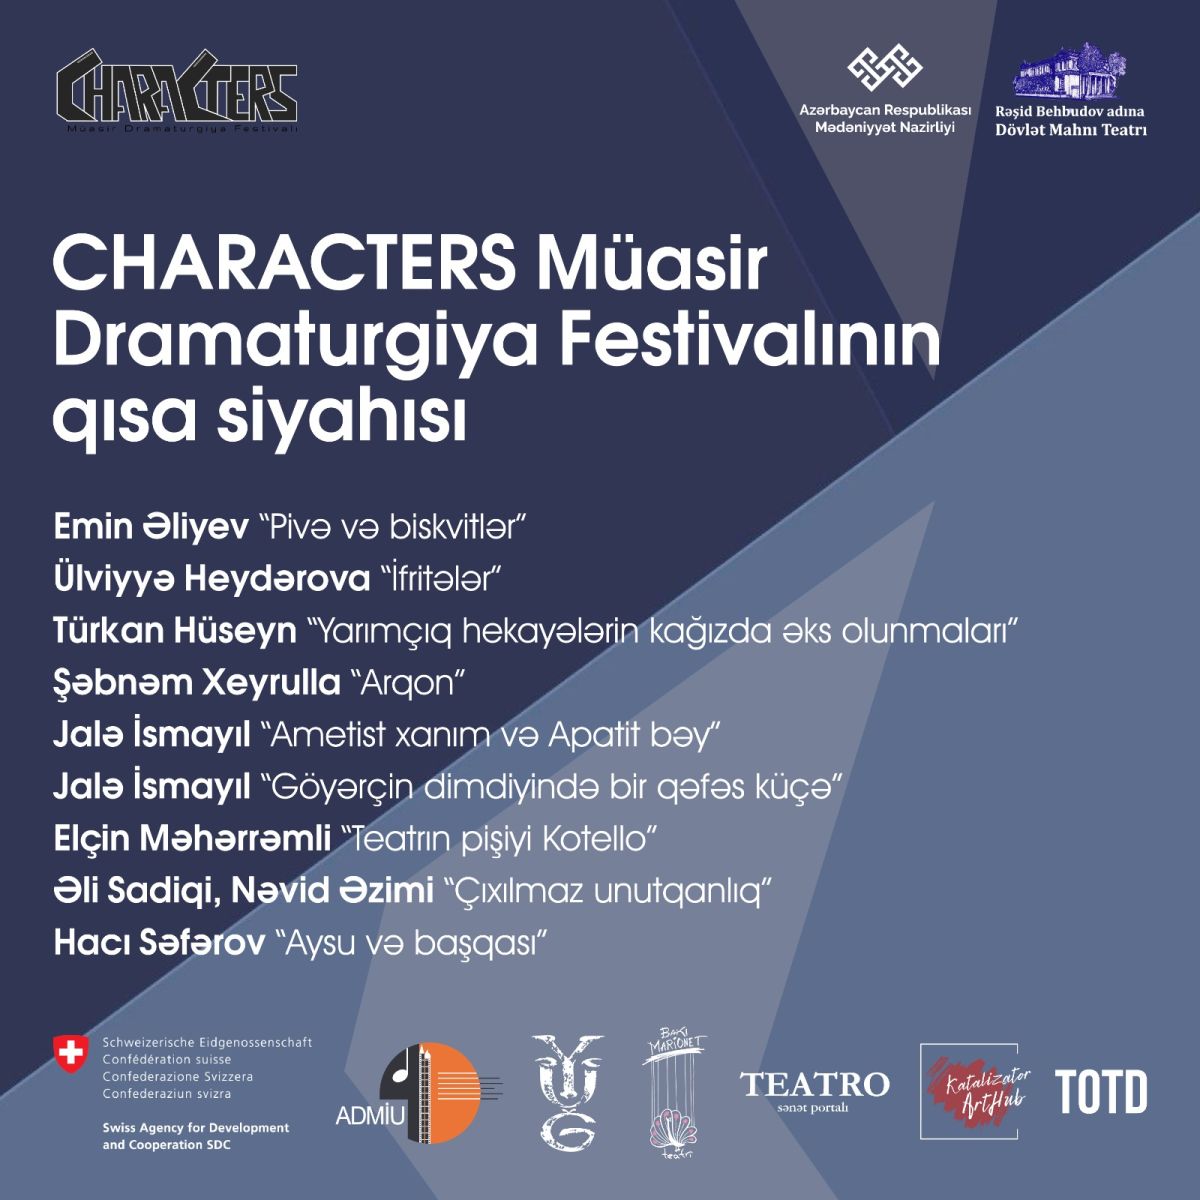 CHARACTERS Müasir Dramaturgiya Festivalı qısa siyahını açıqlayıb